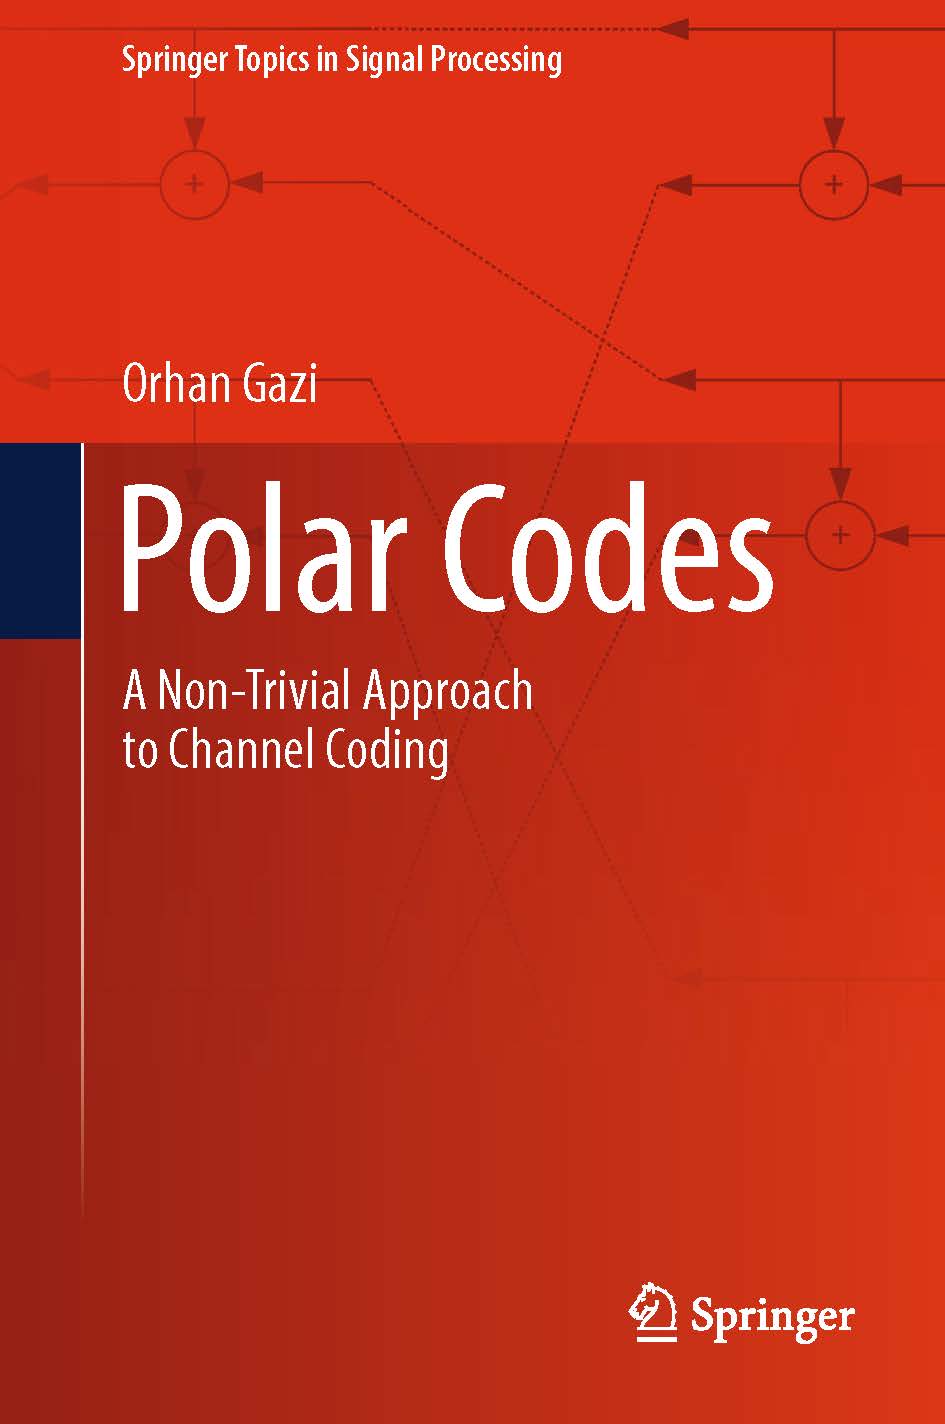 页面提取自－2019_Book_Polar Codes.jpg